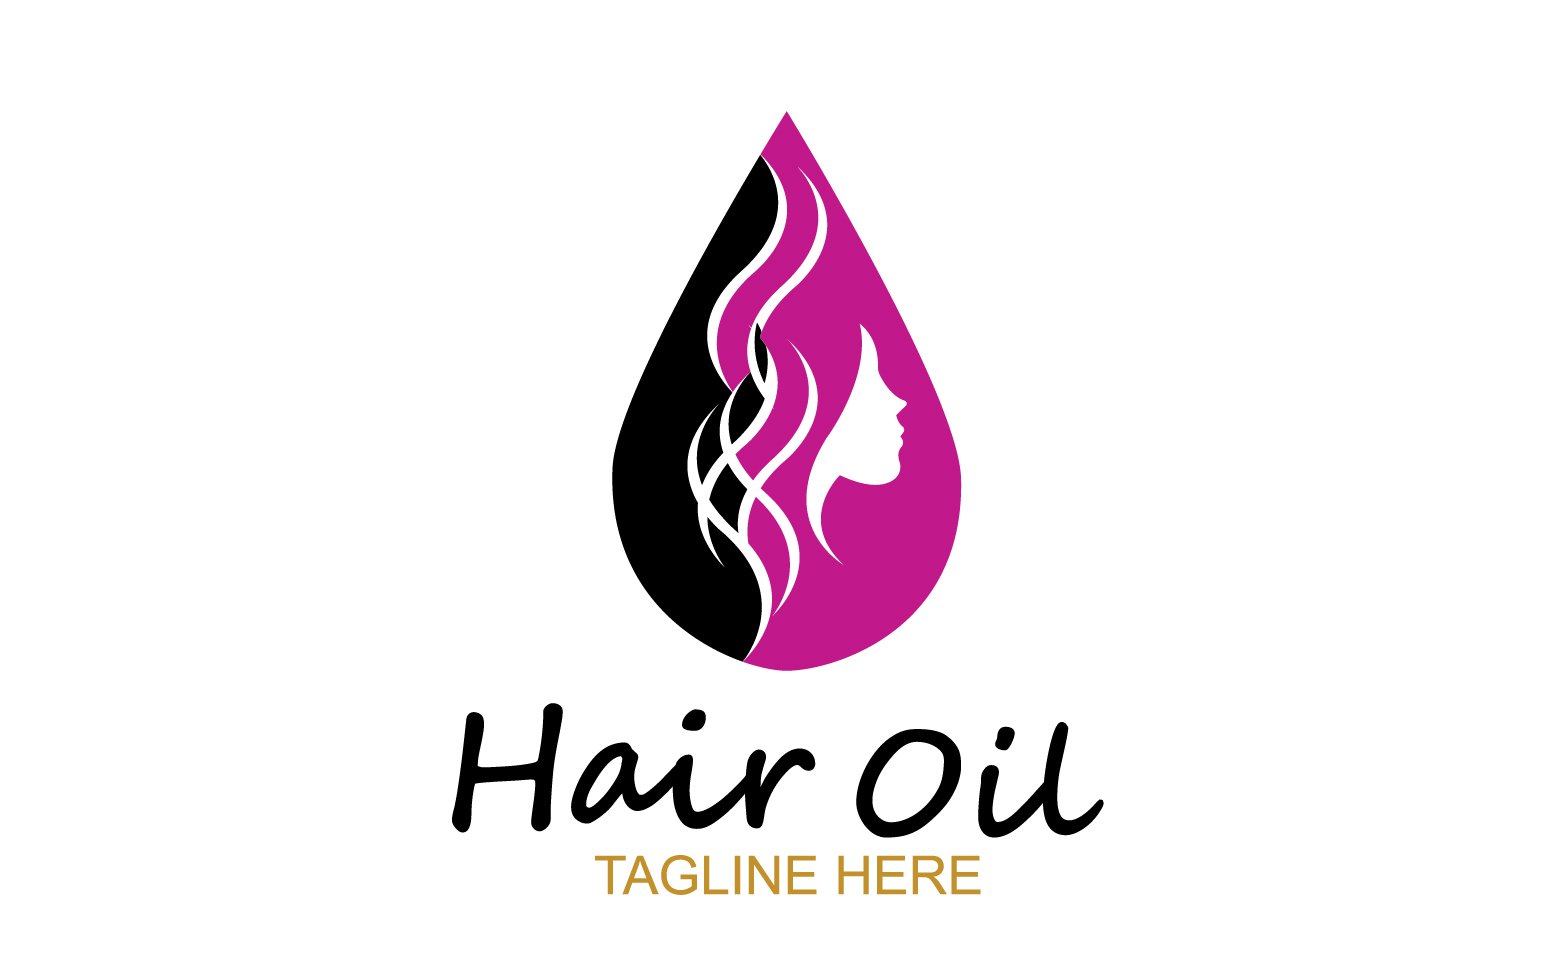 Hair oil health logo vector template v14